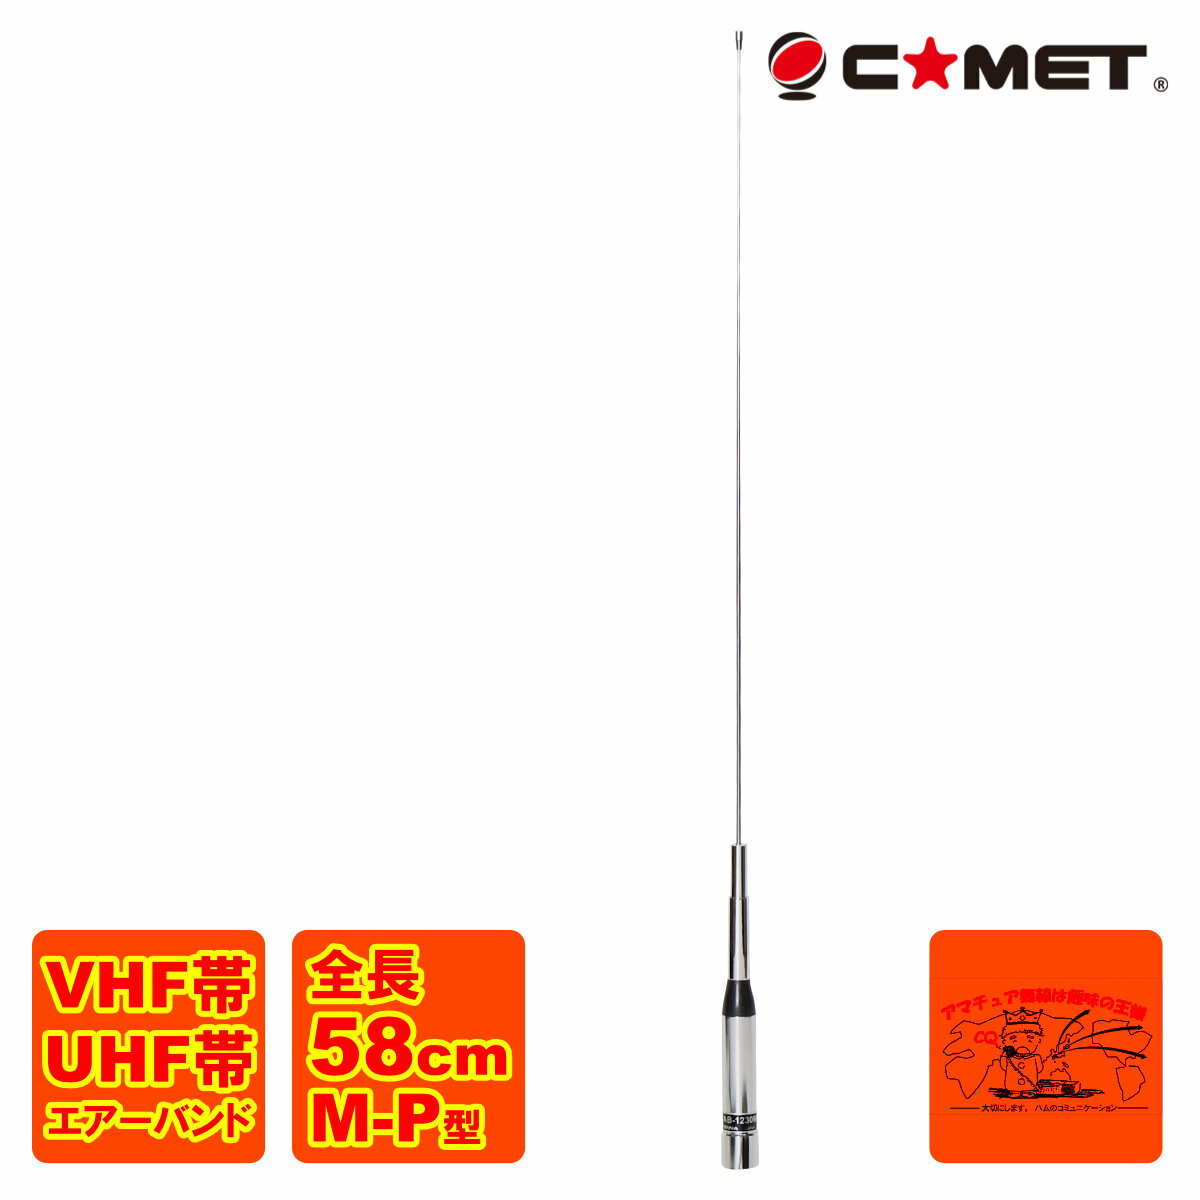 AB-1230M Rbg VHF/UHF GA[oh[rAei